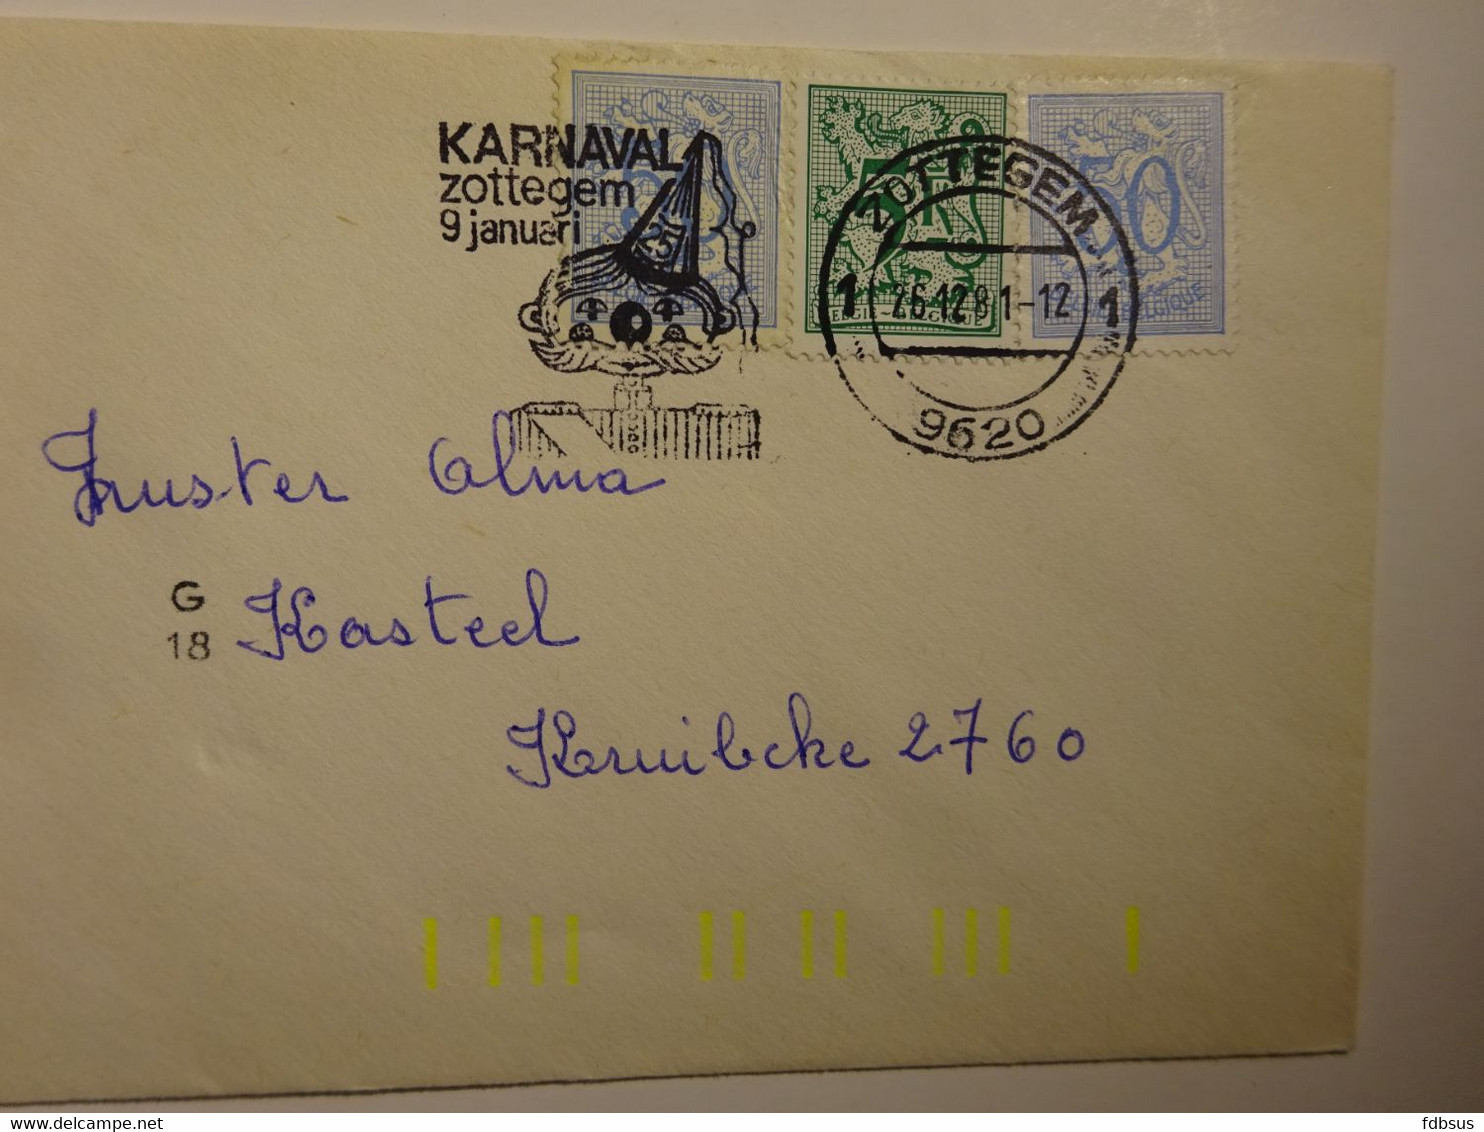 1981 Kleine Enveloppe Uit 9620 ZOTTEGEM Gefr. 1 X 5Fr + 2 X 50c -  Slogan KARNAVAL - Zie Scan (s) Voor Zegels, Stempels - 1977-1985 Cijfer Op De Leeuw